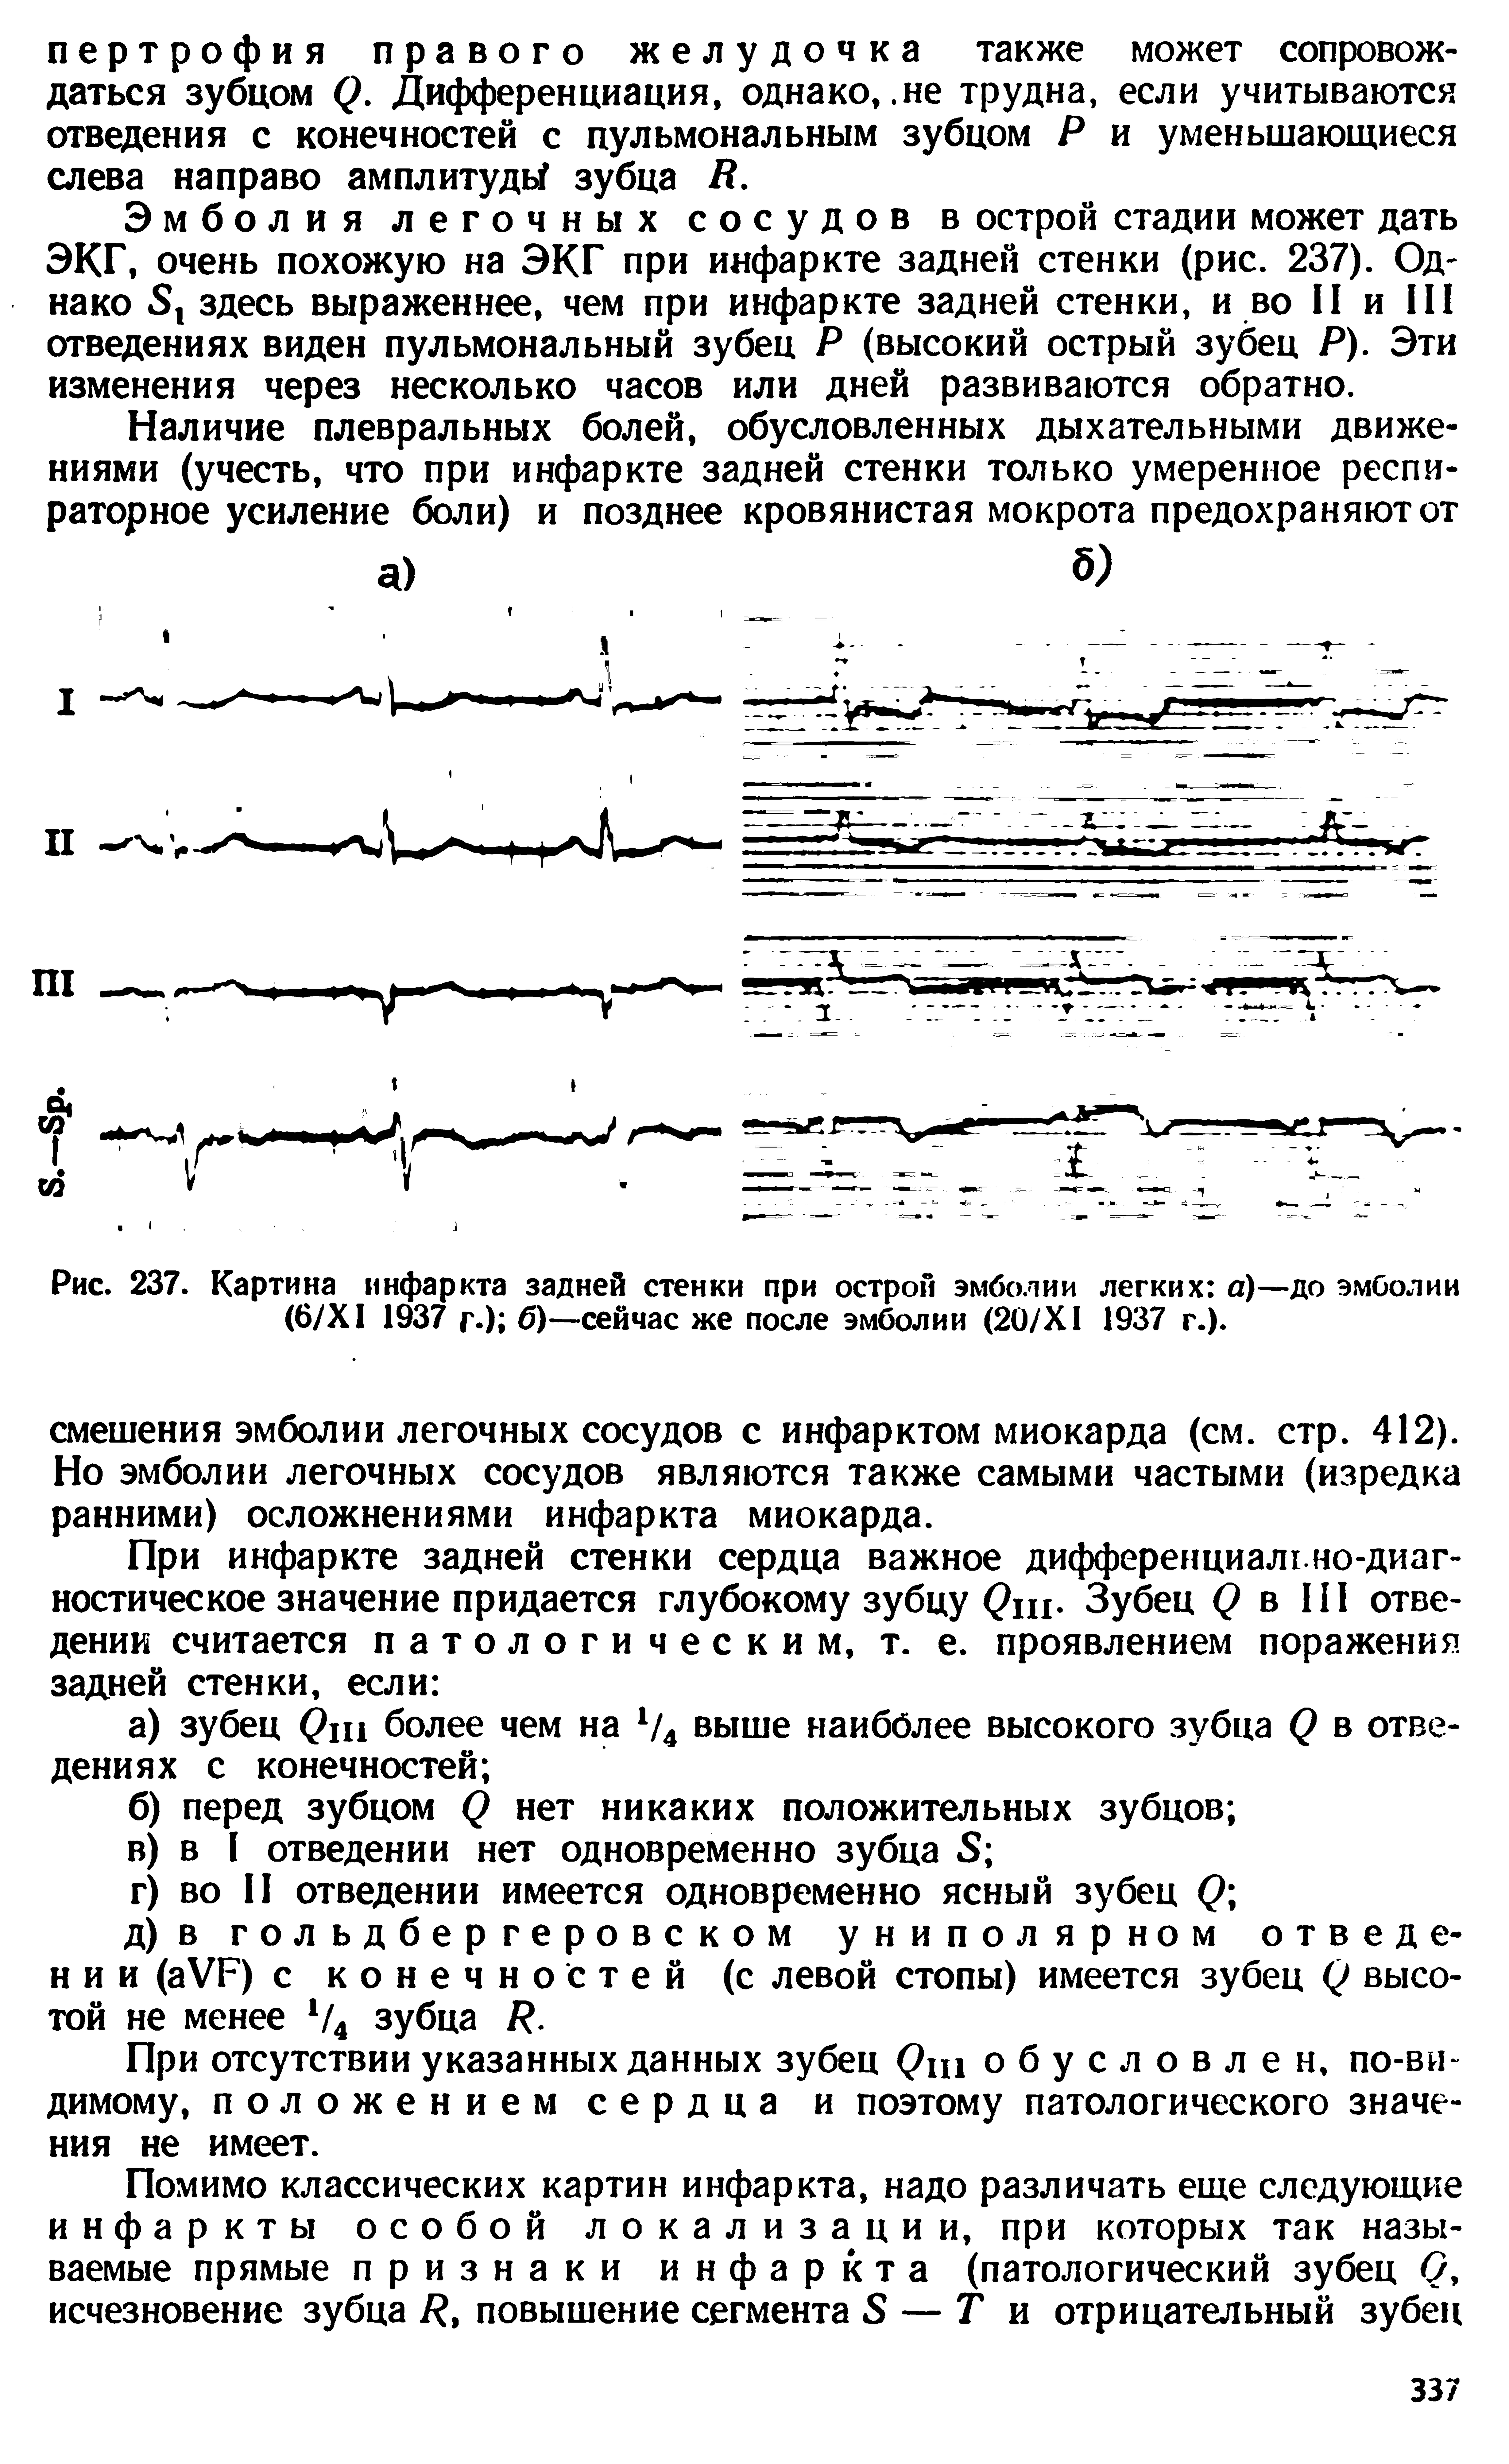 Рис. 237. Картина инфаркта задней стенки при острой эмболии легких а)—но эмболии (6/ХI 1937 г.) б)—сейчас же после эмболии (20/Х1 1937 г.).